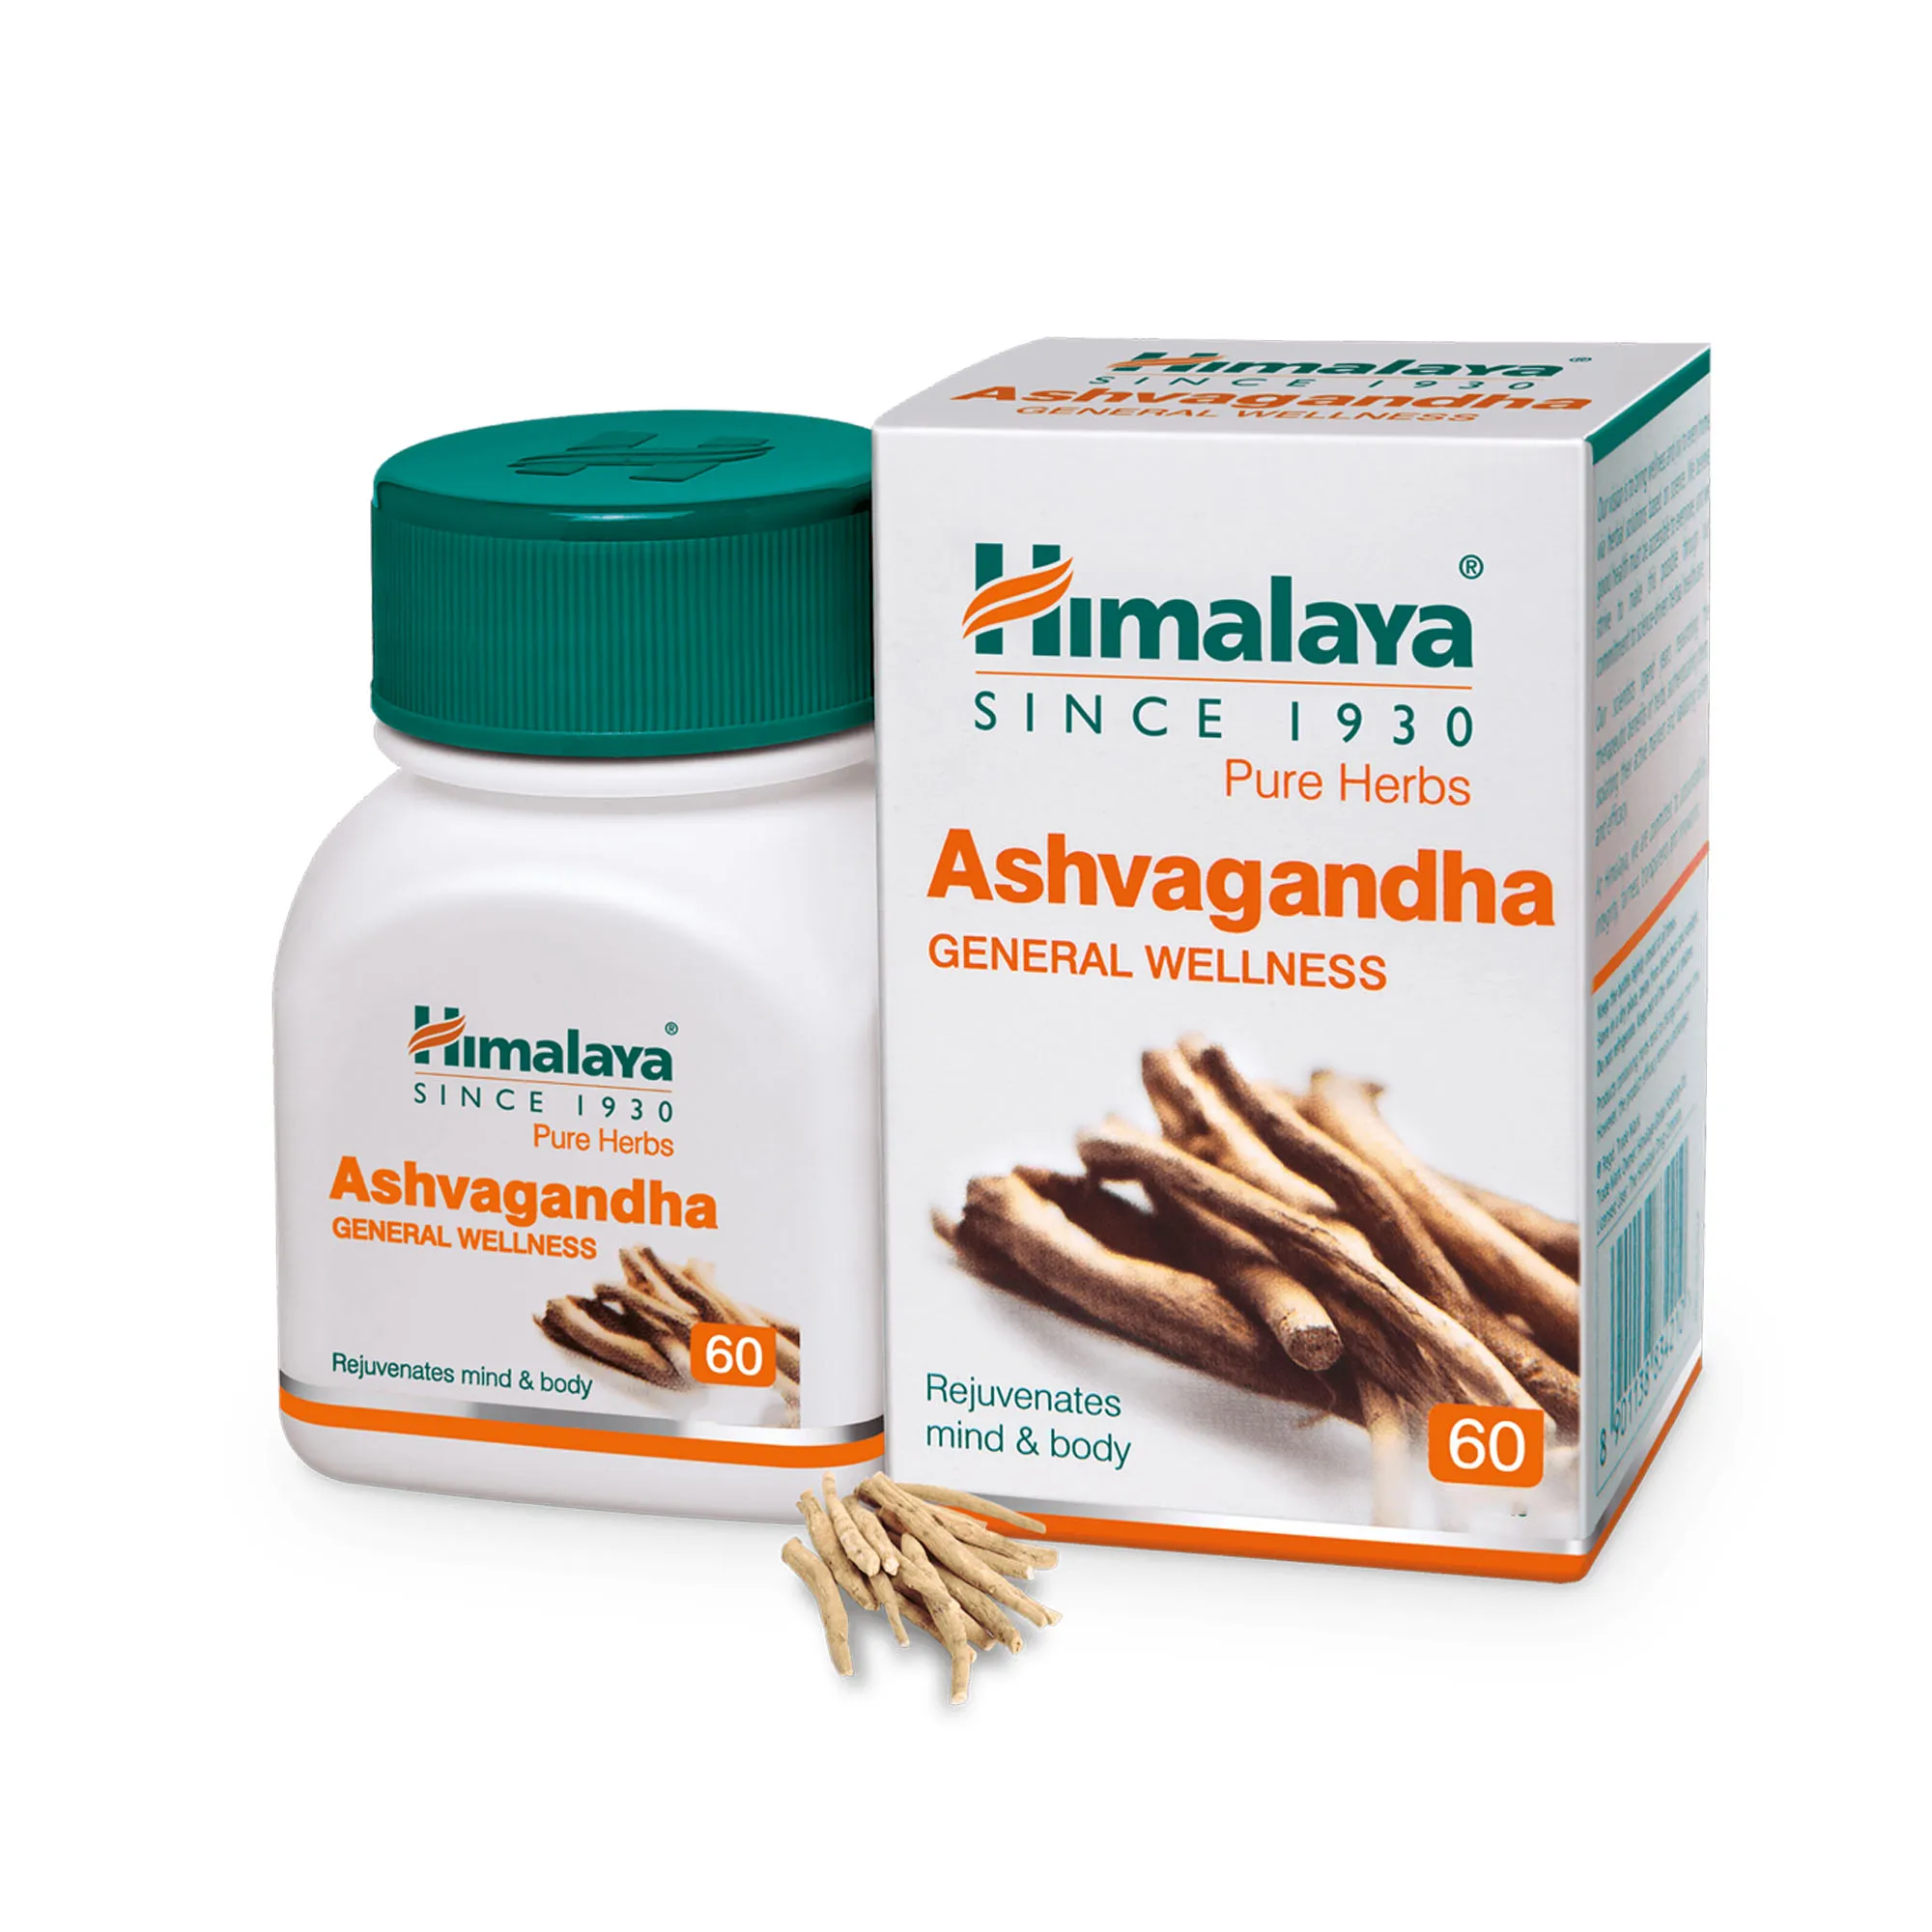 Ashwagandha izboljšuje m poplavne, zmanjšuje anx iety, in povečuje raven energije z veget arian 60 kos* 2bottle